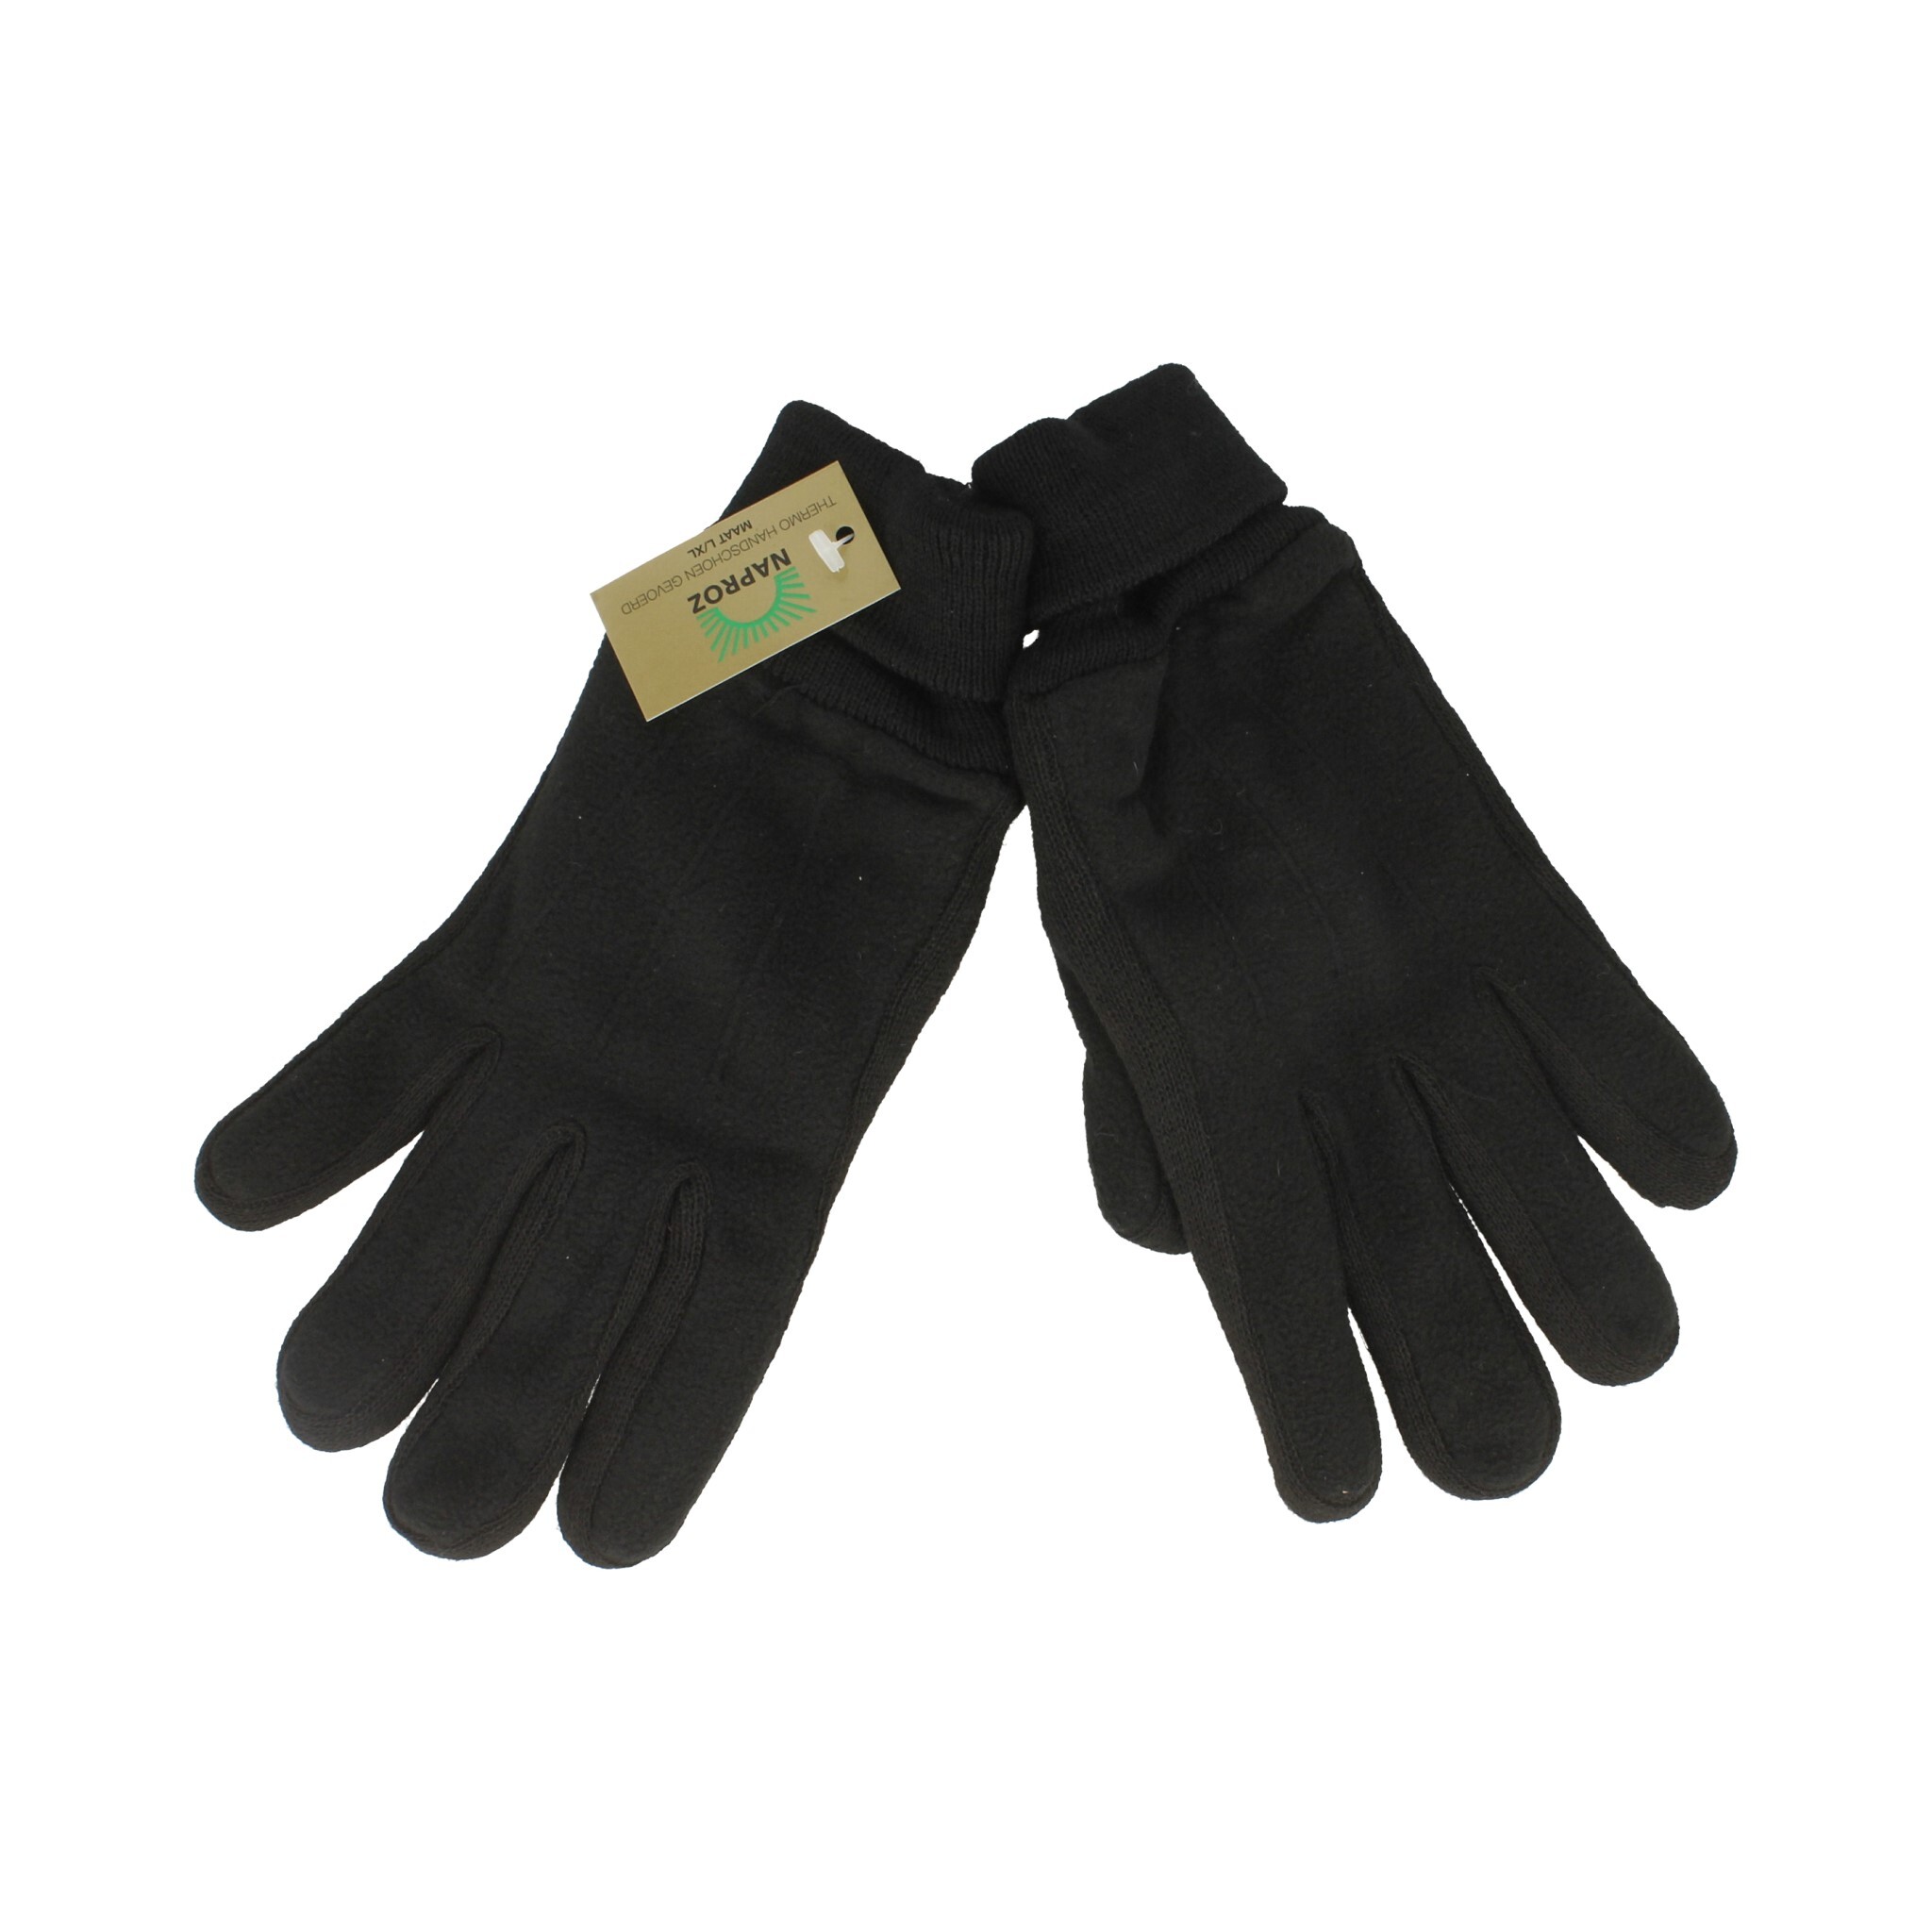 Naproz Thermo Handschoenen Zwart Maat L/XL 1 Paar